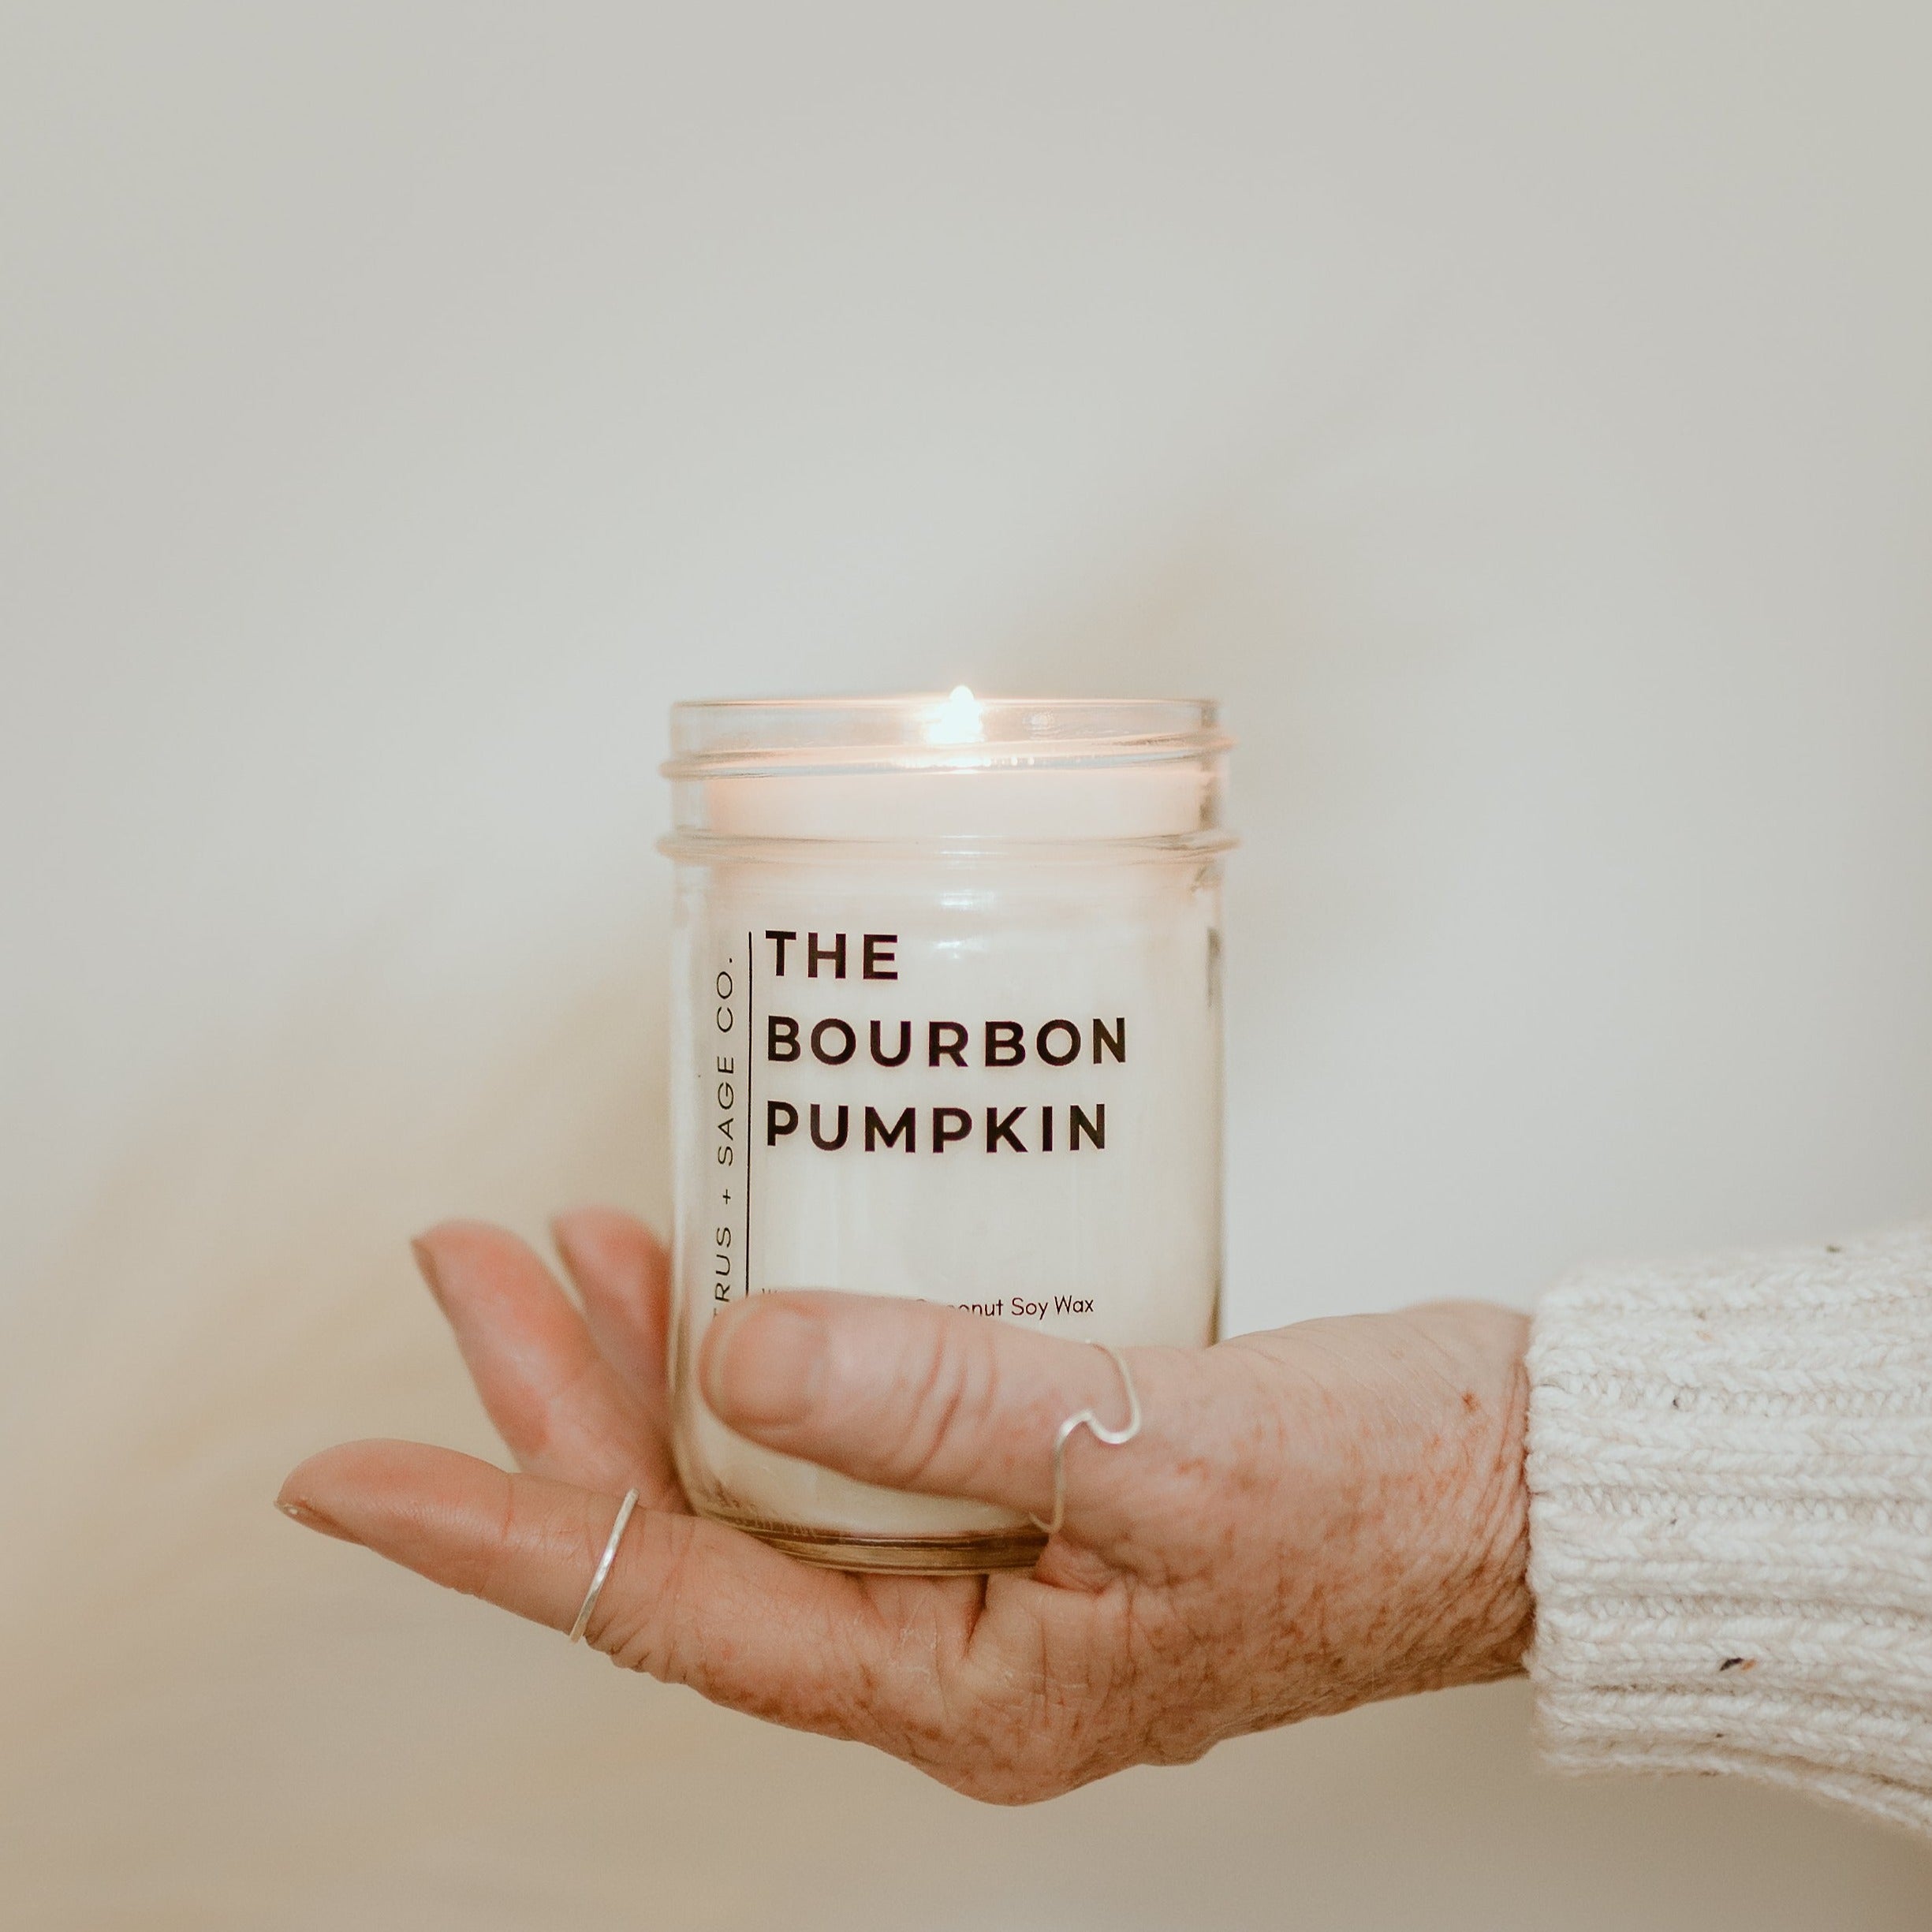 The Bourbon Pumpkin.